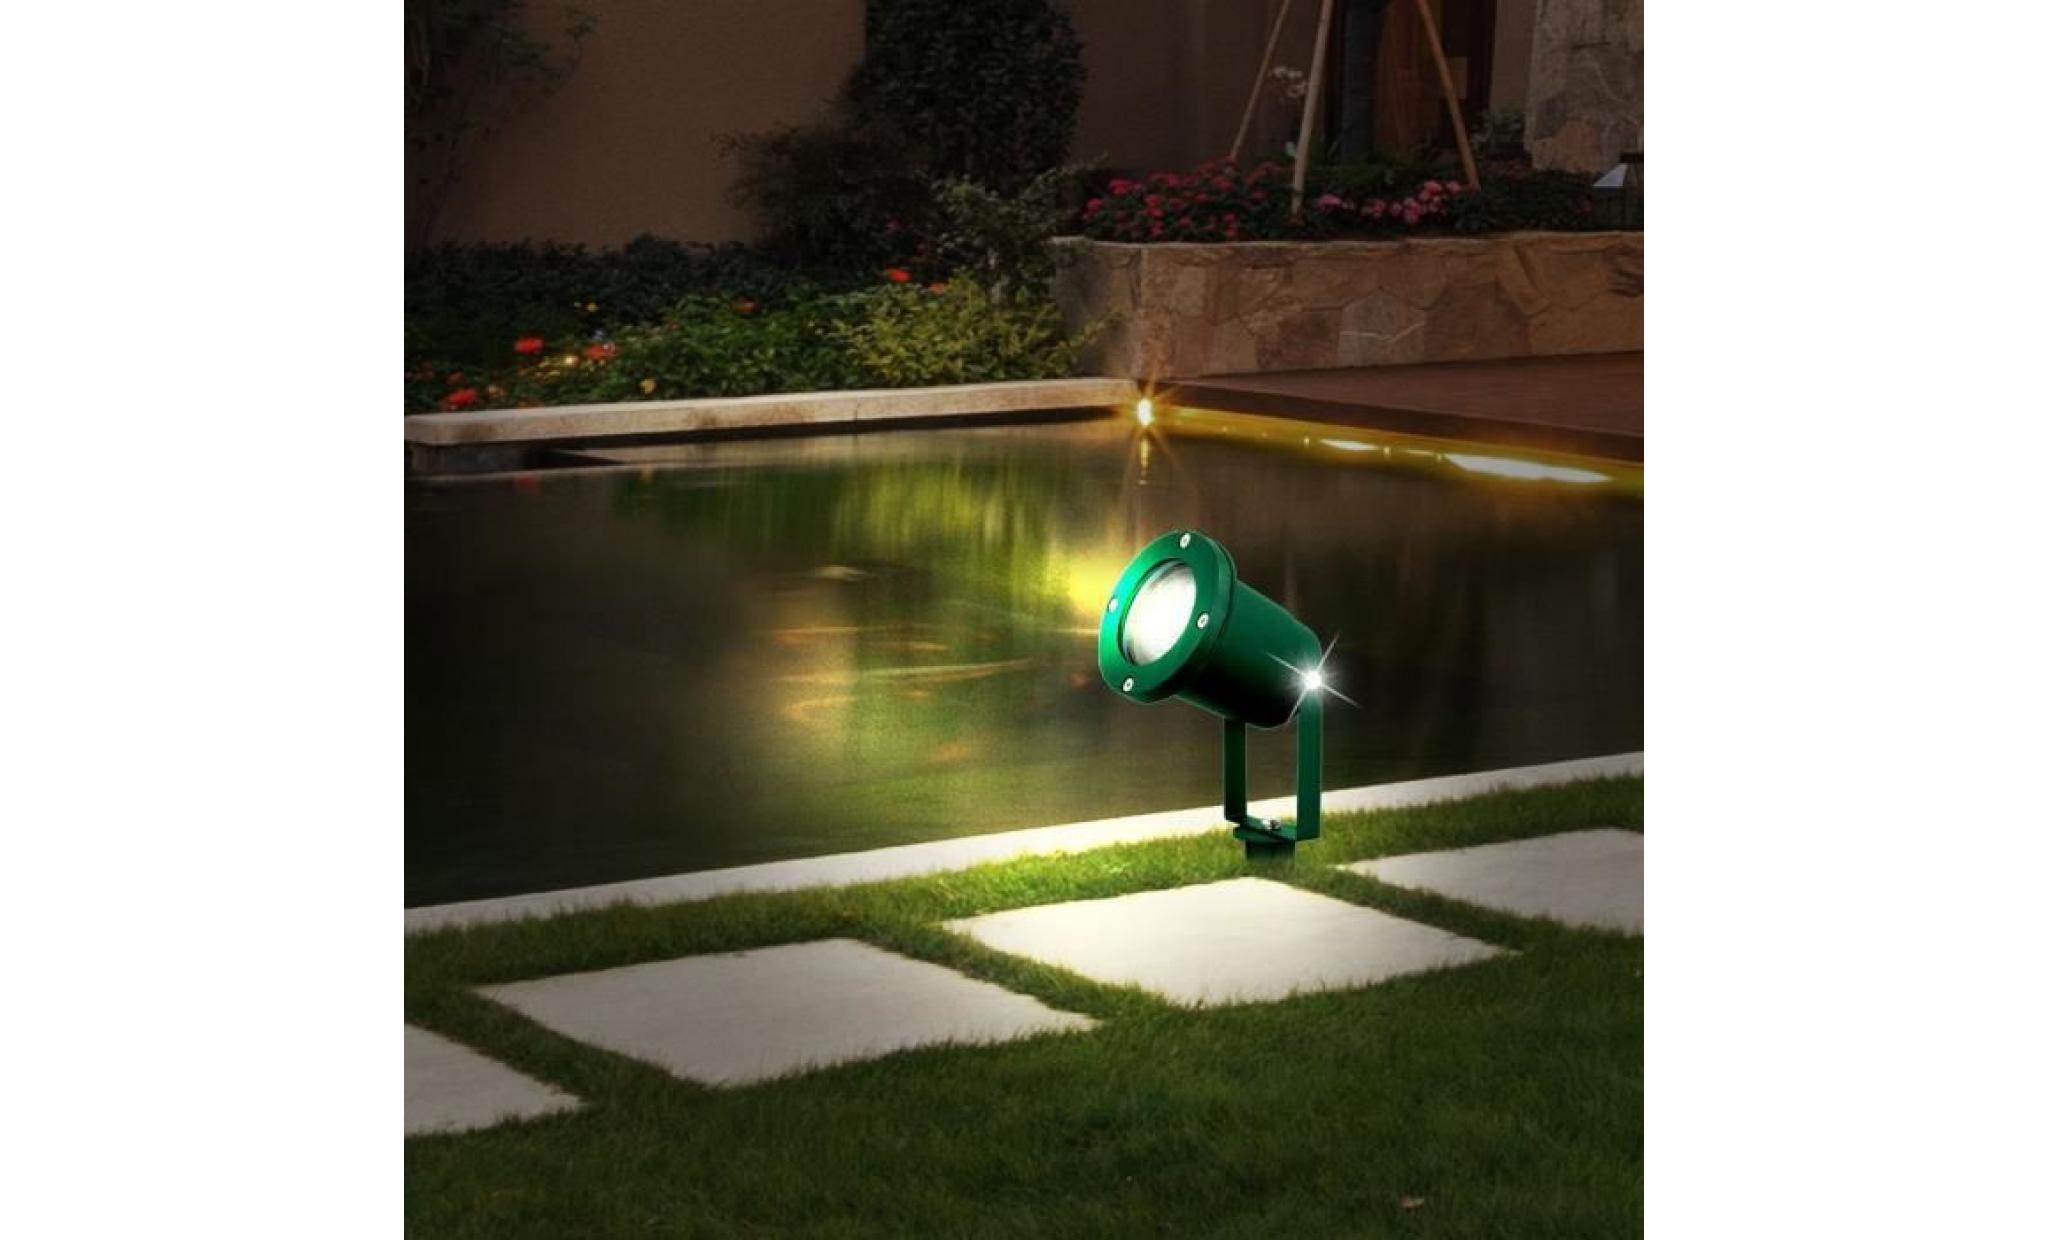 borne à piquer del aluminium vert jardin terrasse projecteur luminaire extérieur lampe led pas cher